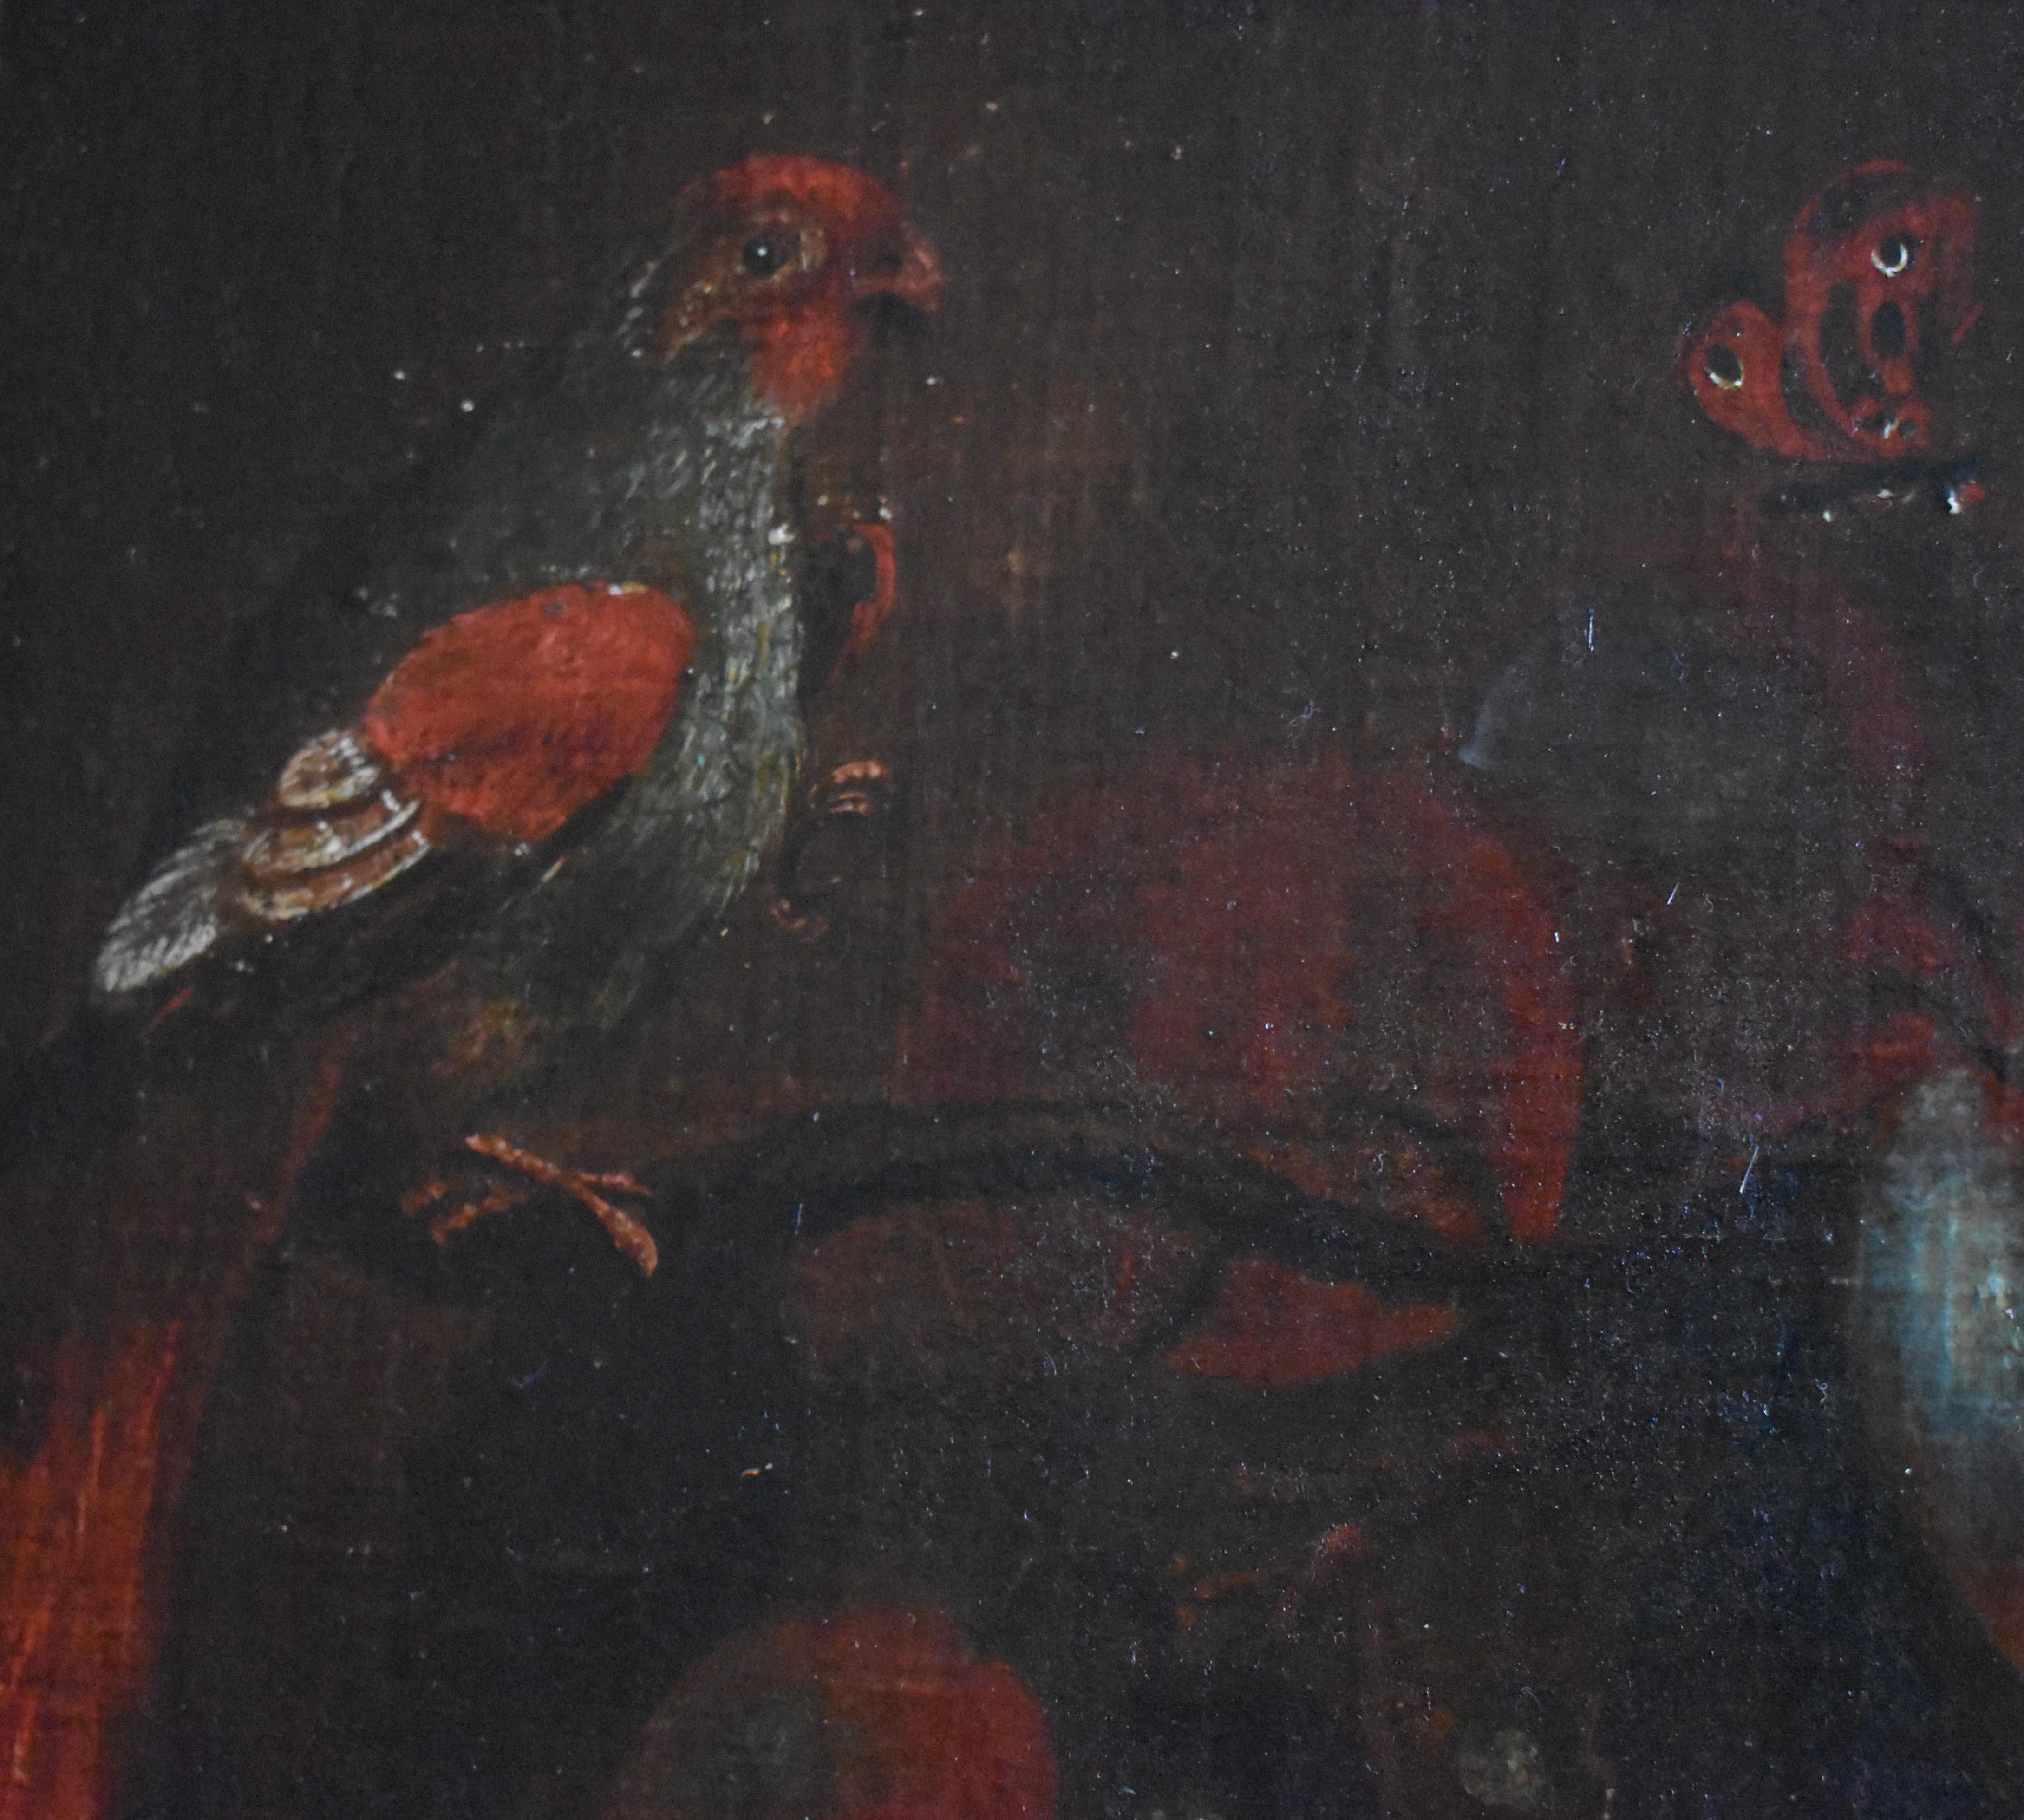 Anhänger von Adriaen Coorte (1665-1707) 18. Jahrhundert Stillleben um 1795

Ein prächtiges Stillleben mit Pfirsichen, Trauben, Pflaumen, exotischen Vögeln und Schmetterlingen im Stil der  Adriaen Coorte. Es ist in Öl auf Papier gemalt und dann auf